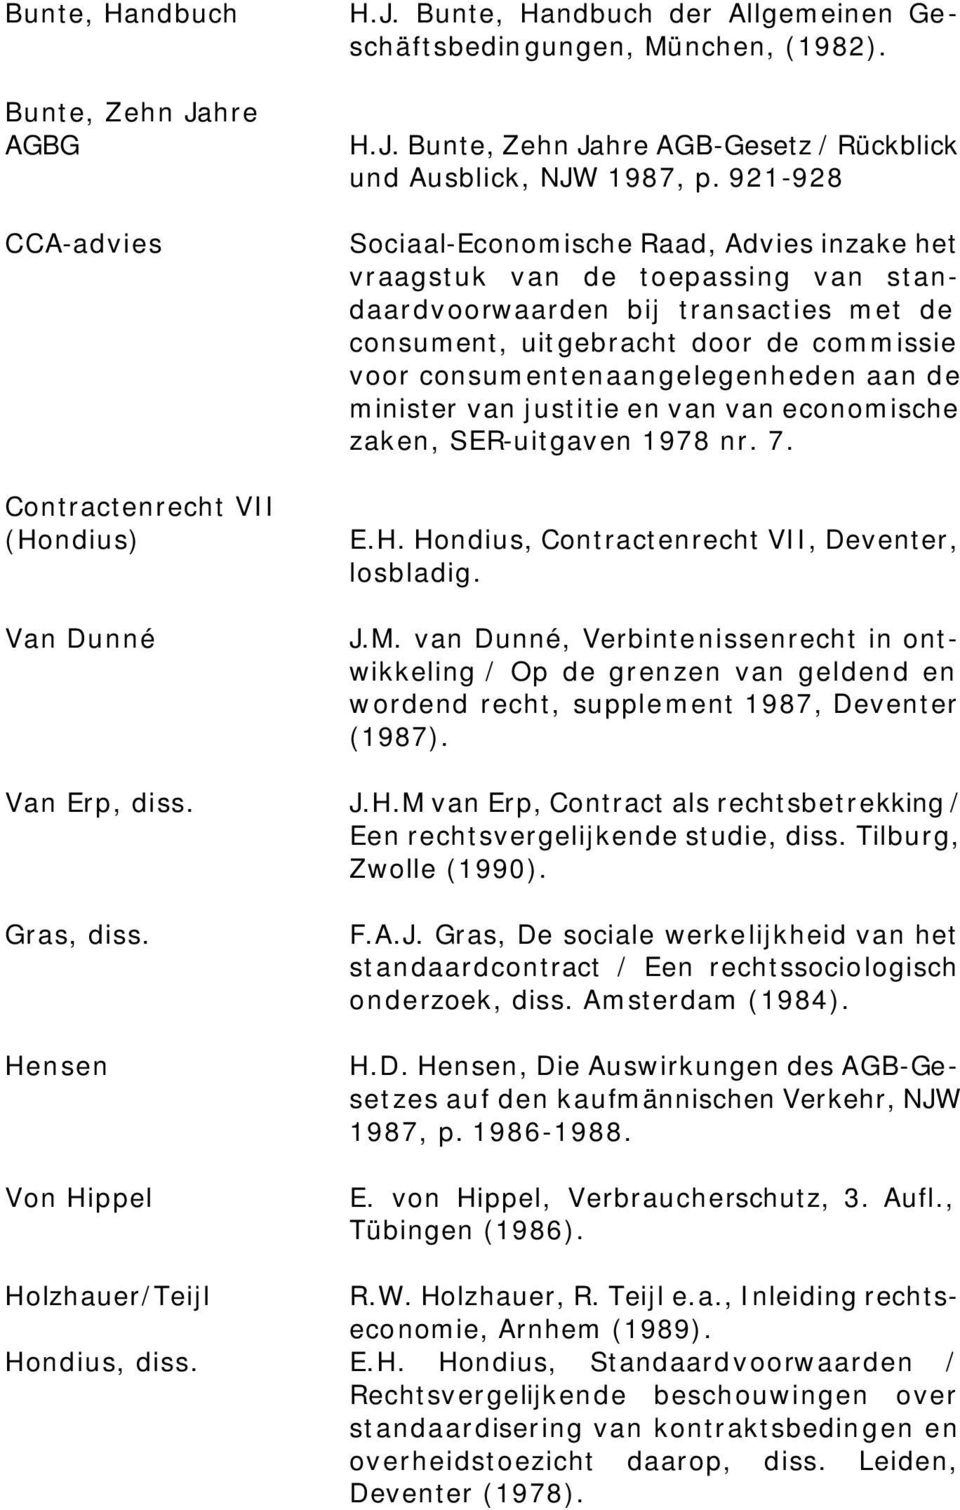 consumentenaangelegenheden aan de minister van justitie en van van economische zaken, SER-uitgaven 1978 nr. 7. E.H. Hondius, Contractenrecht VII, Deventer, losbladig. J.M.